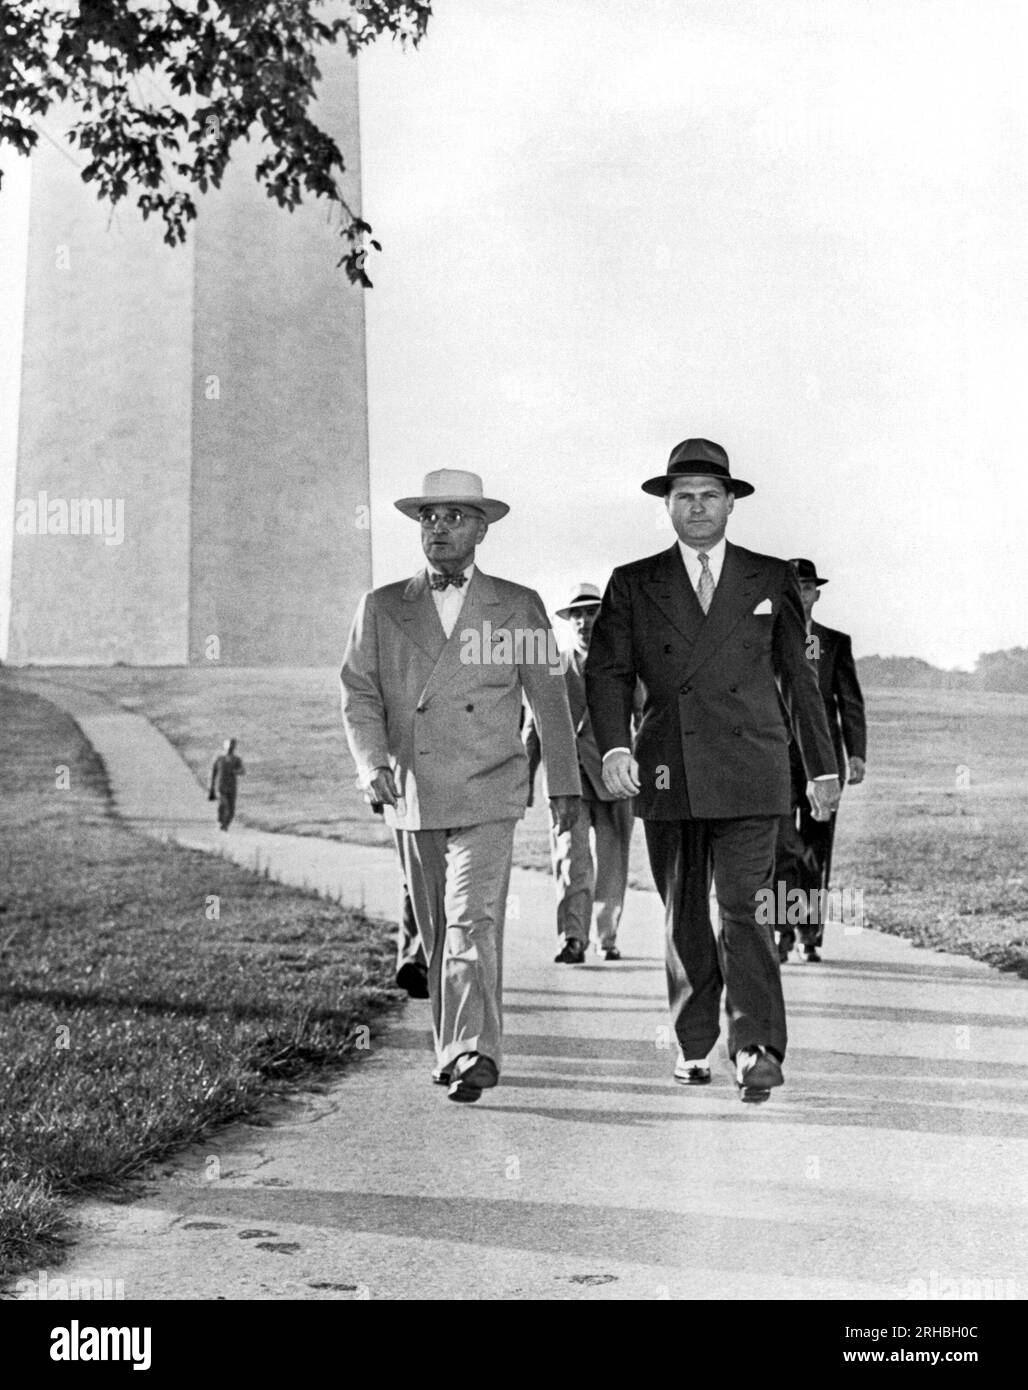 Washington, D.C.:   1946 President Truman with his secret service entourage on a brisk walk through the Washington Monument grounds. Stock Photo